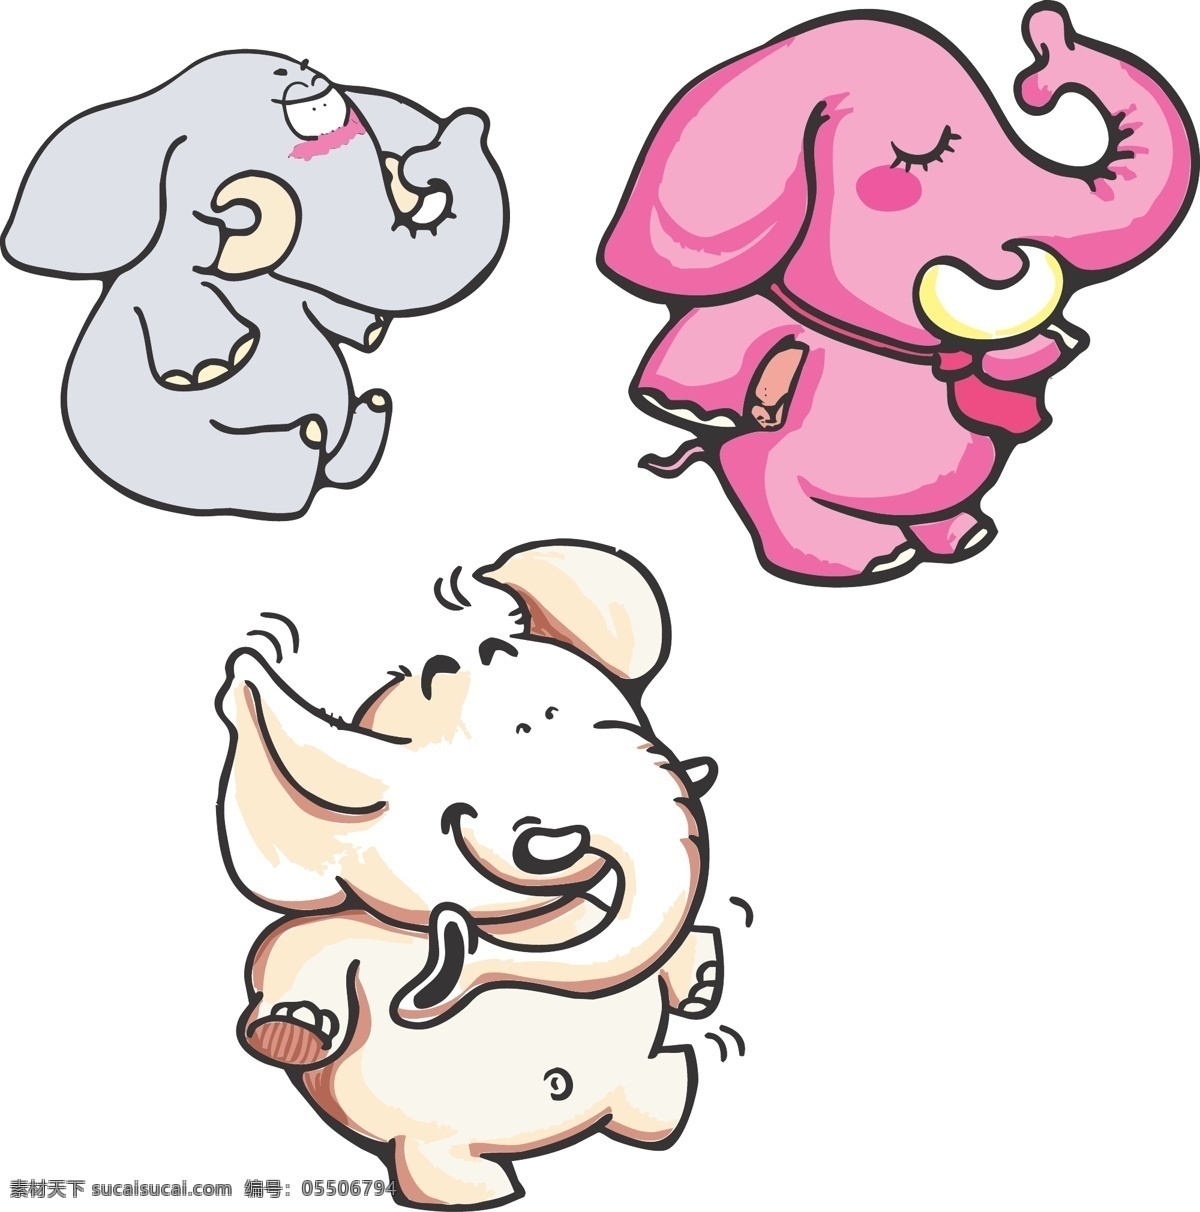 大象 三只大象 可爱的大象 矢量图 儿童插画 儿童漫画 坐着的大象 象鼻子 象牙 粉色大象 生物世界 野生动物